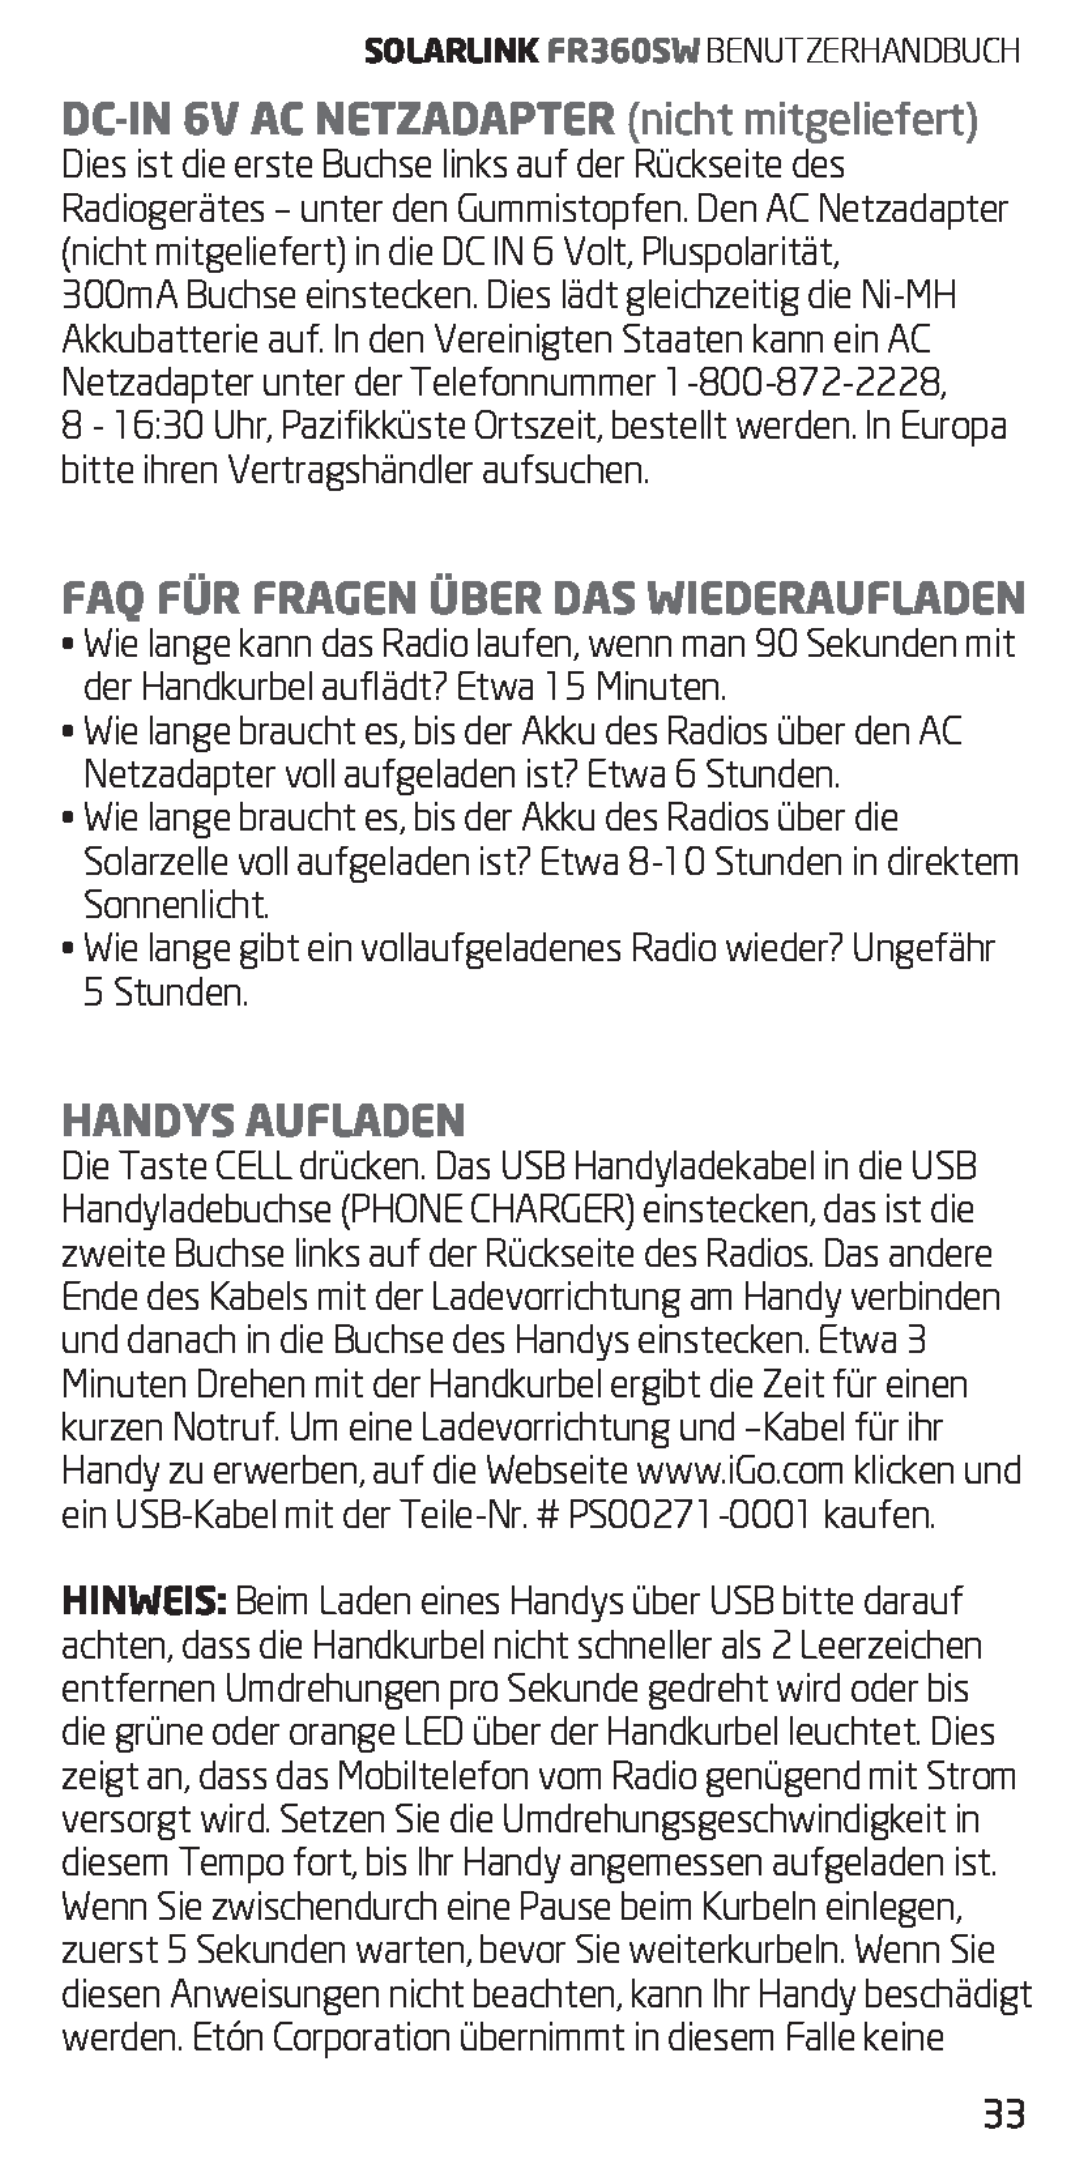 Eton FR360 owner manual DC-in6v AC Netzadapter nicht mitgeliefert, Faq Für Fragen Über Das Wiederaufladen, Handys Aufladen 